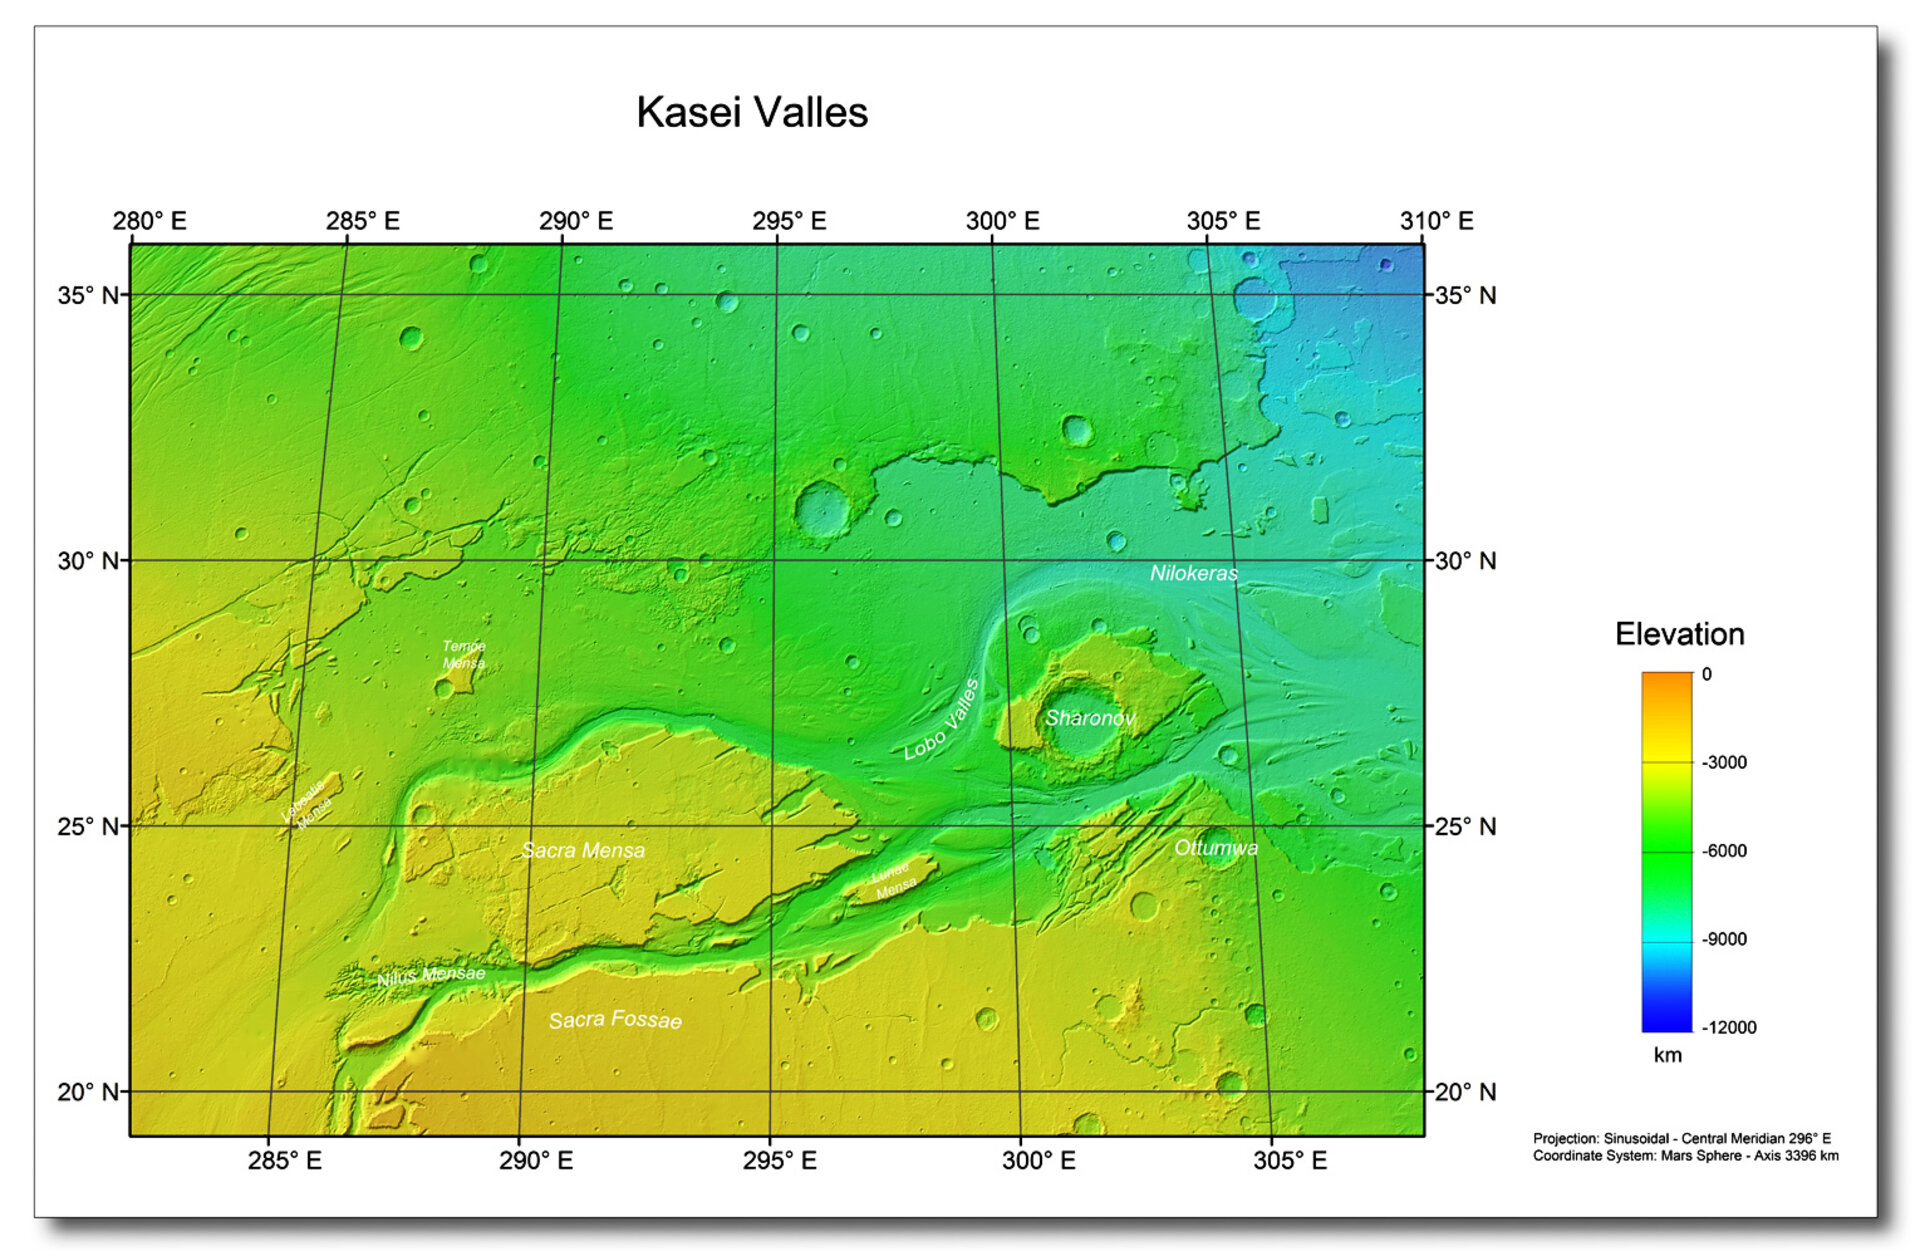  Kasei Valles topography